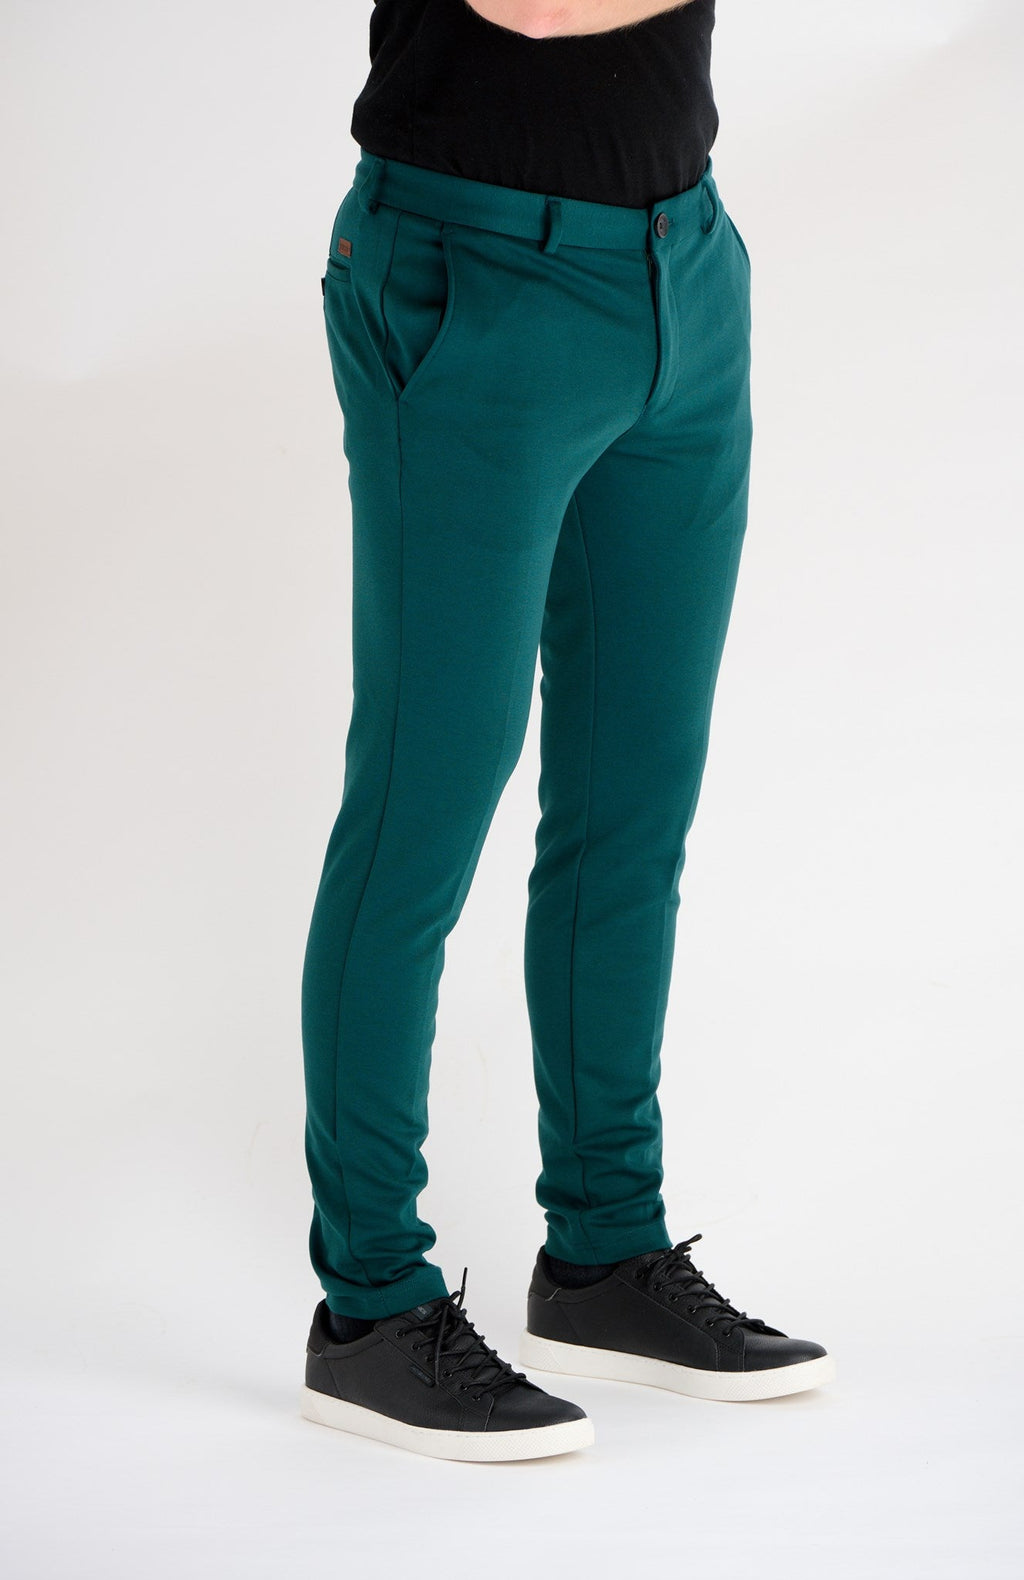 Originalne hlače za izvedbu - zelene